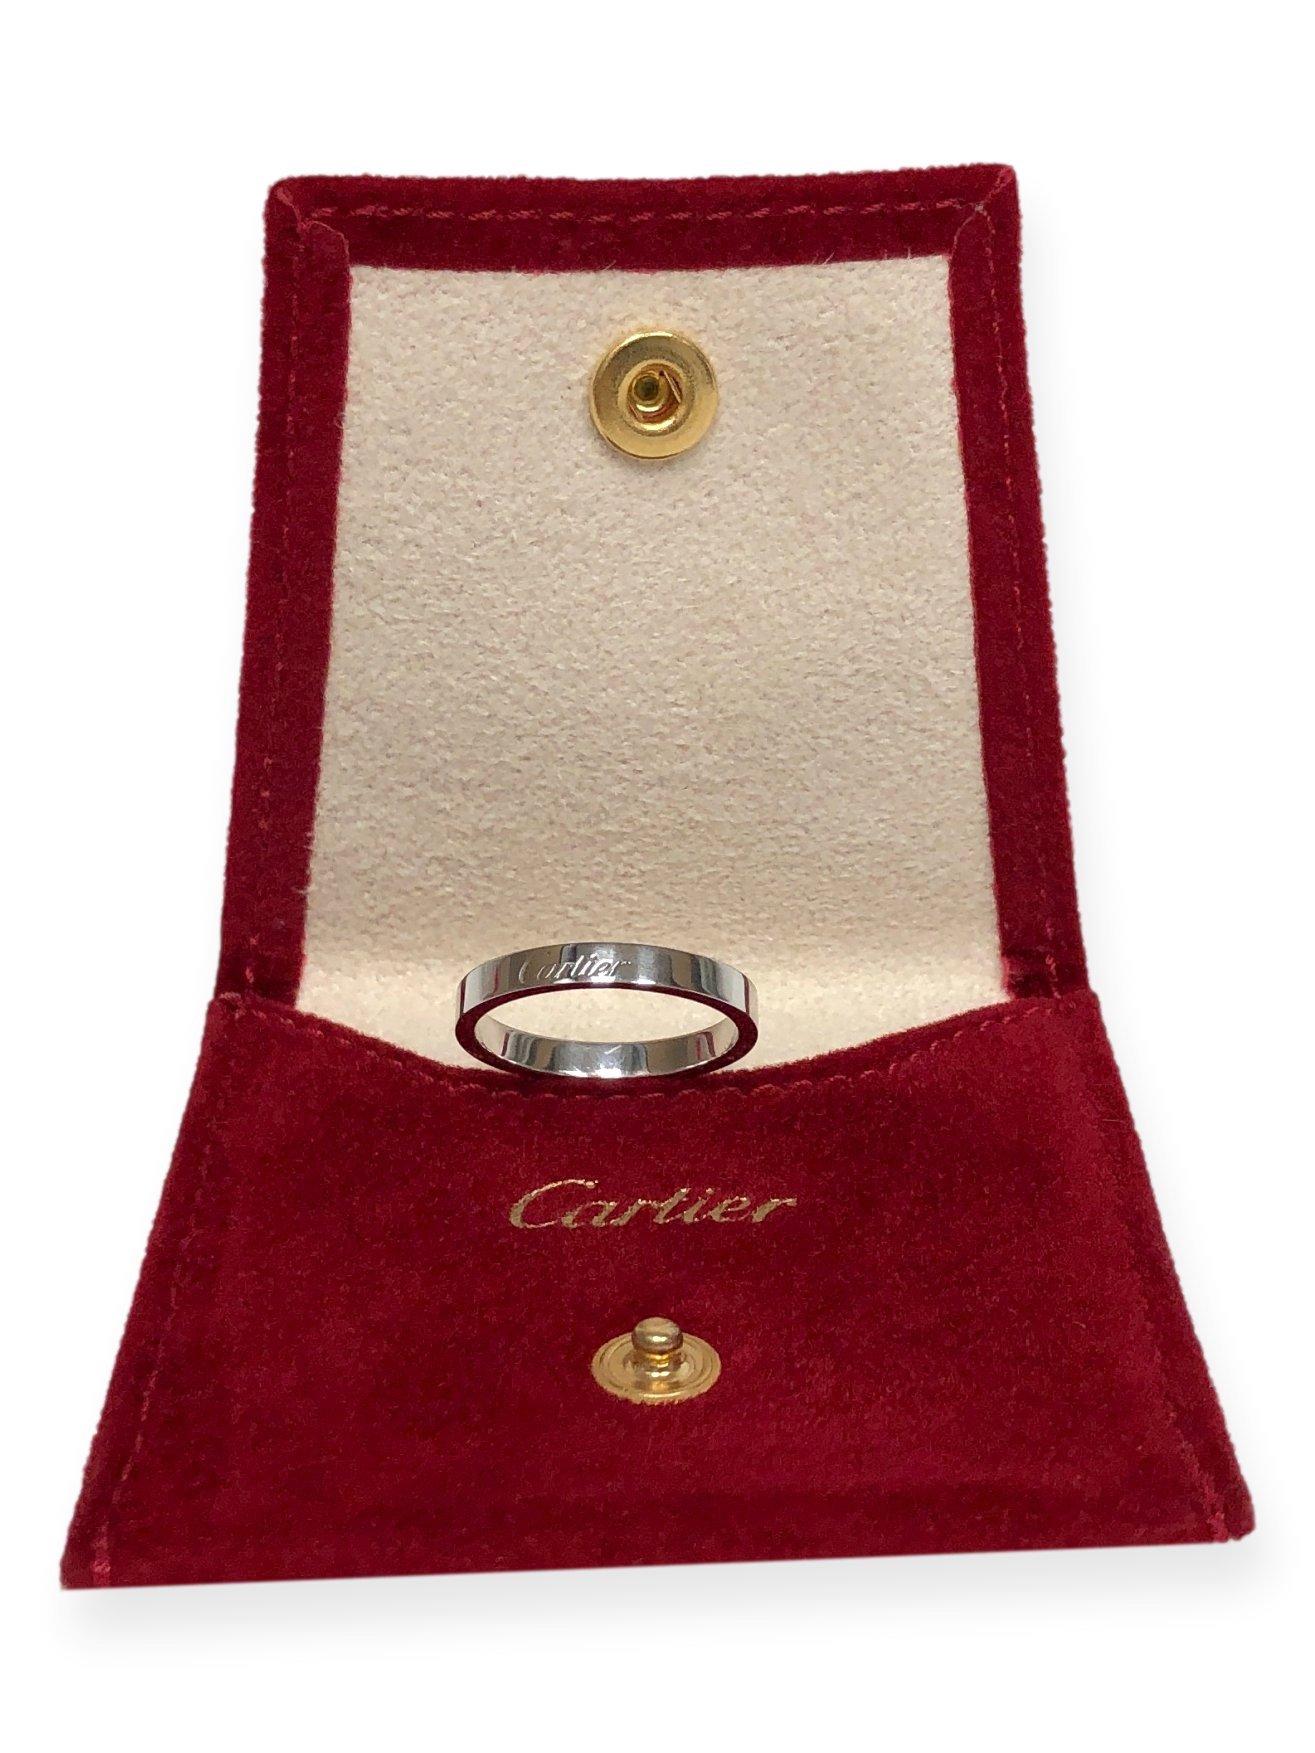 Modern Cartier C De Cartier Platinum Wedding Band Ring 3mm Size 8.5 with Receipt